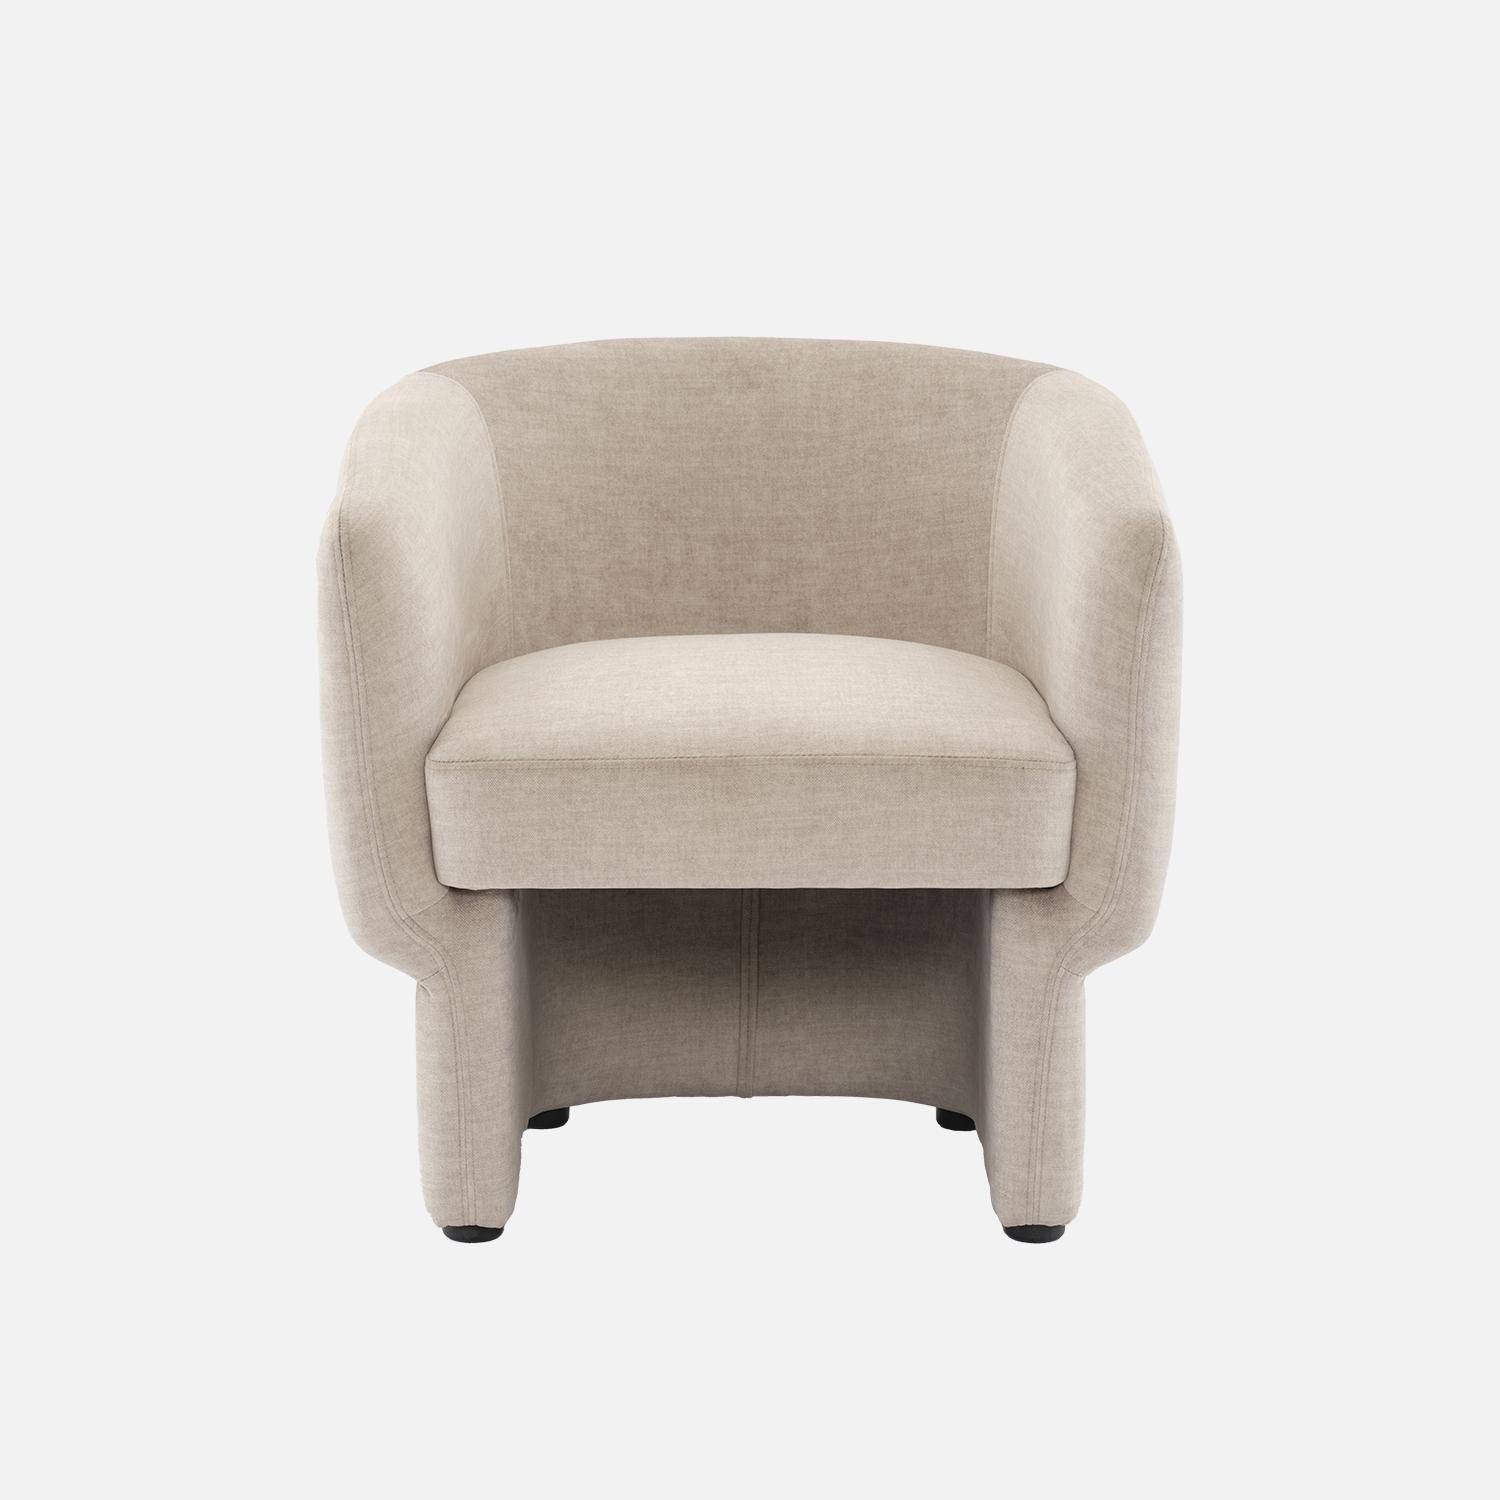 Beige stoffen fauteuil, Dolce, L 70 x P 70 x H 72cm, eucalyptushouten structuur Photo2